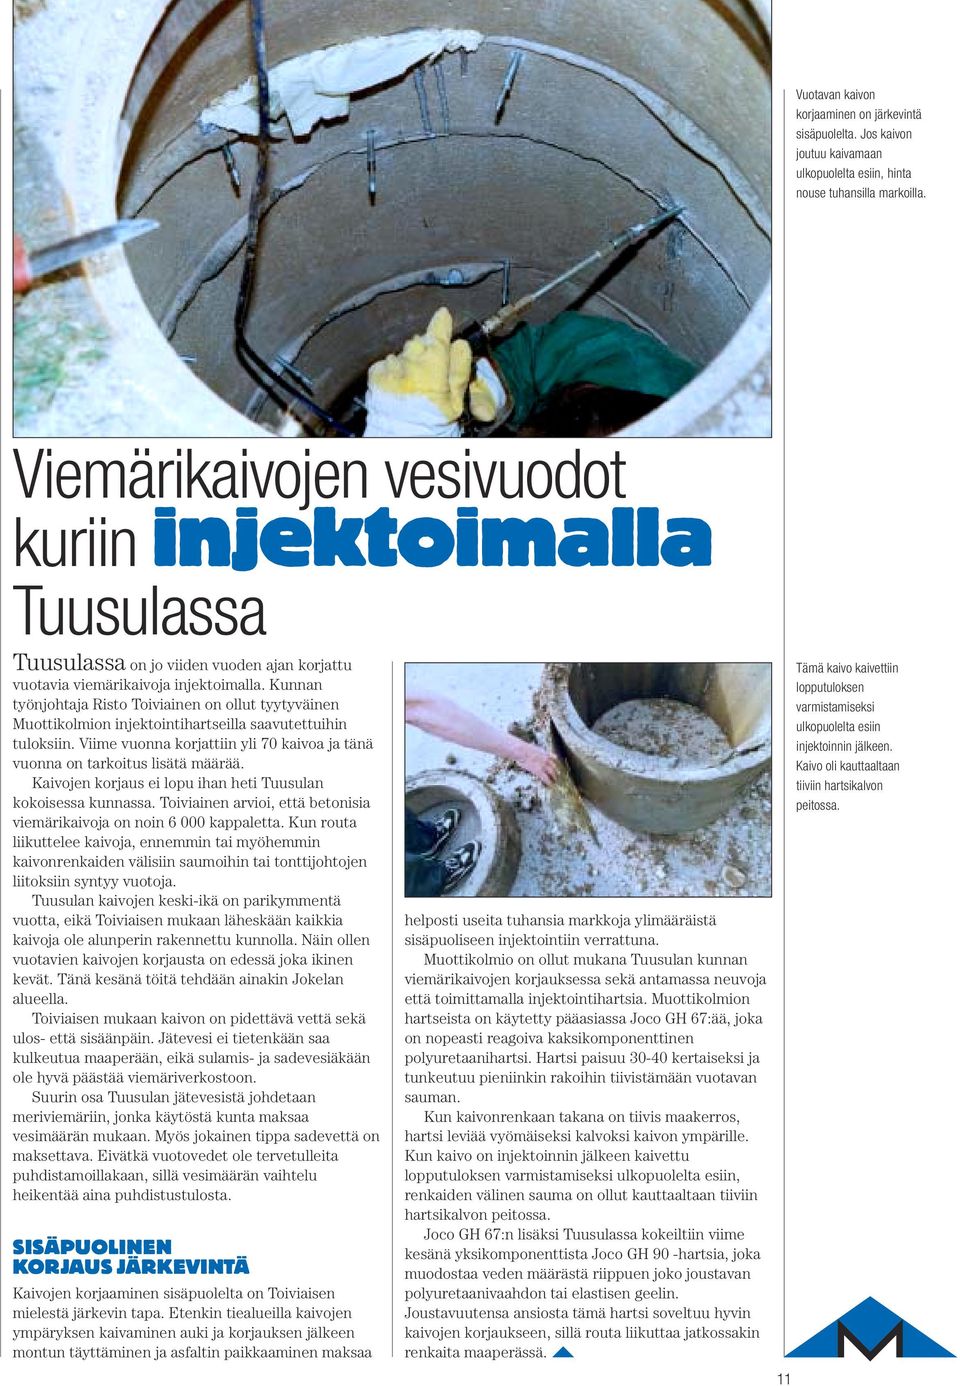 Kunnan työnjohtaja Risto Toiviainen on ollut tyytyväinen Muottikolmion injektointihartseilla saavutettuihin tuloksiin. Viime vuonna korjattiin yli 70 kaivoa ja tänä vuonna on tarkoitus lisätä määrää.